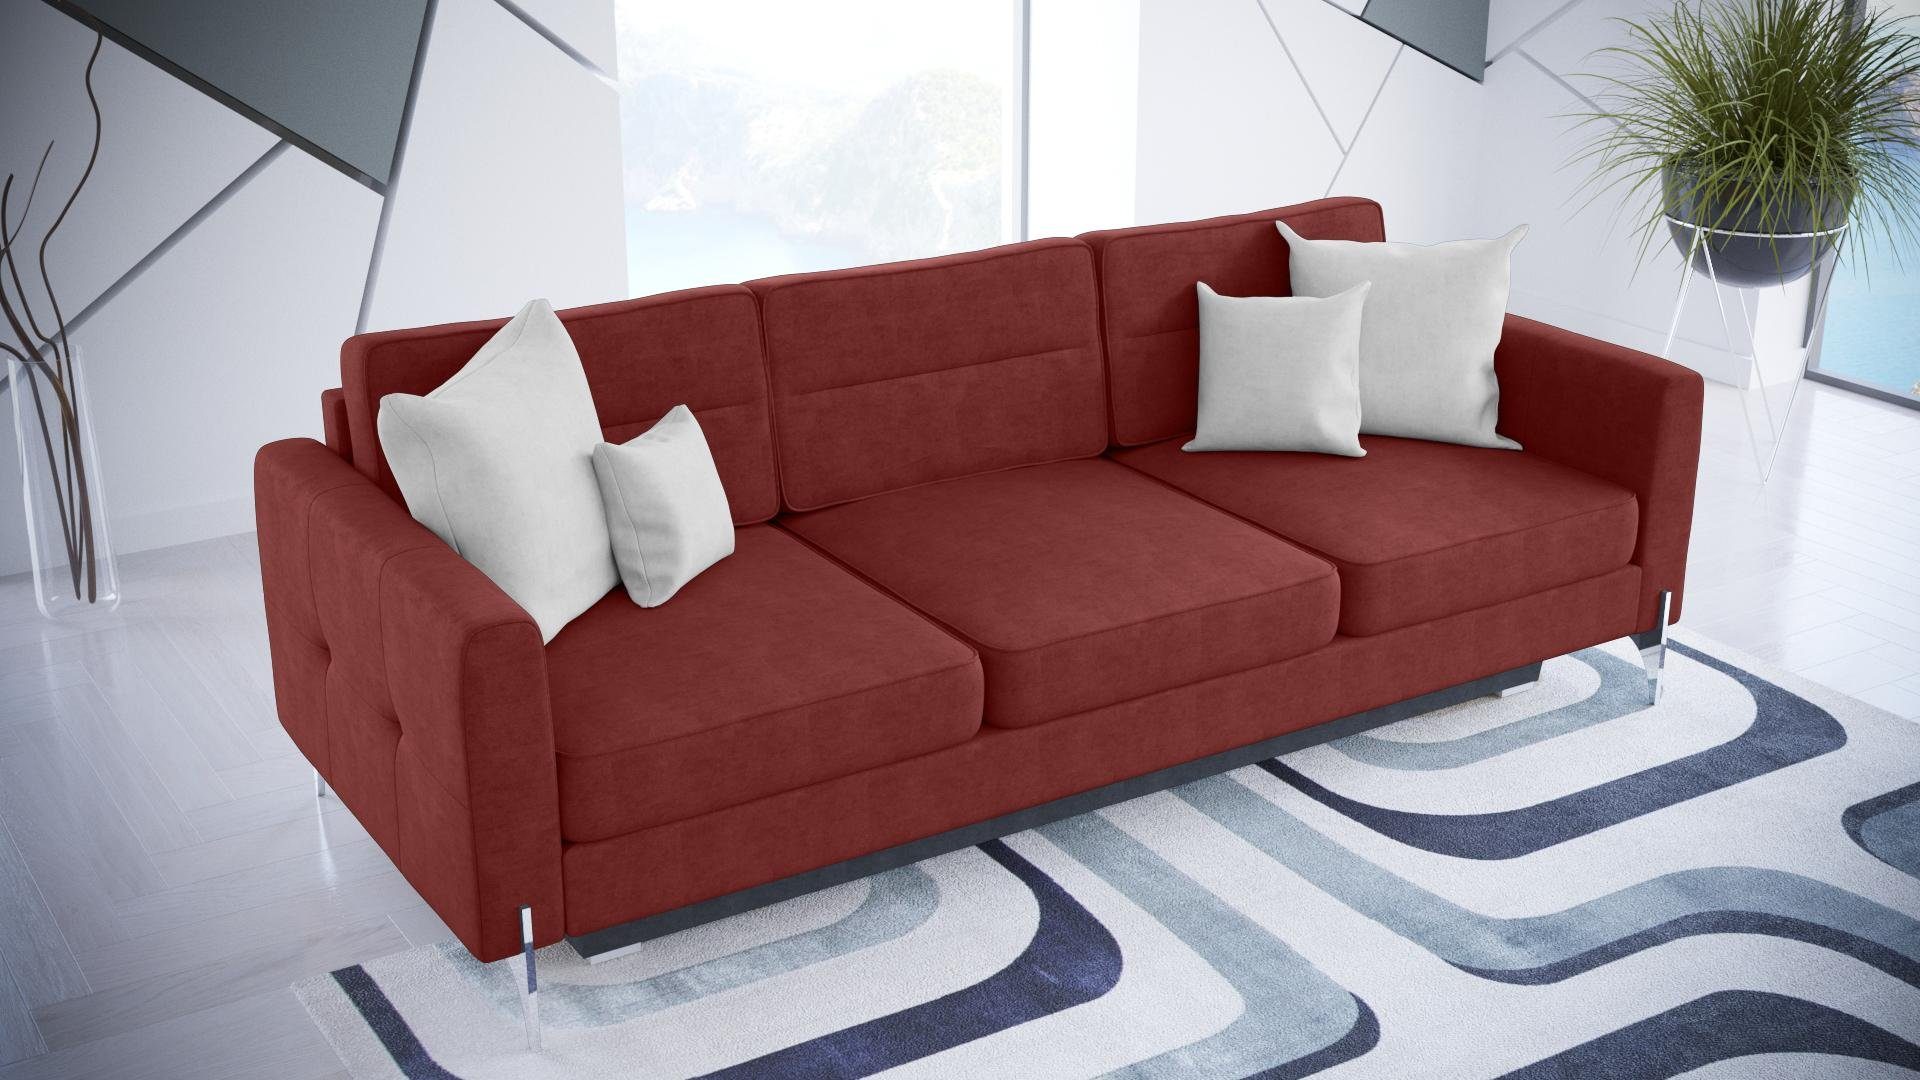 JVmoebel Sofa Sofas Klapp Textil Couch Schlafsofa Bett Sofa Kasten Couchen Polster, Made In Europa